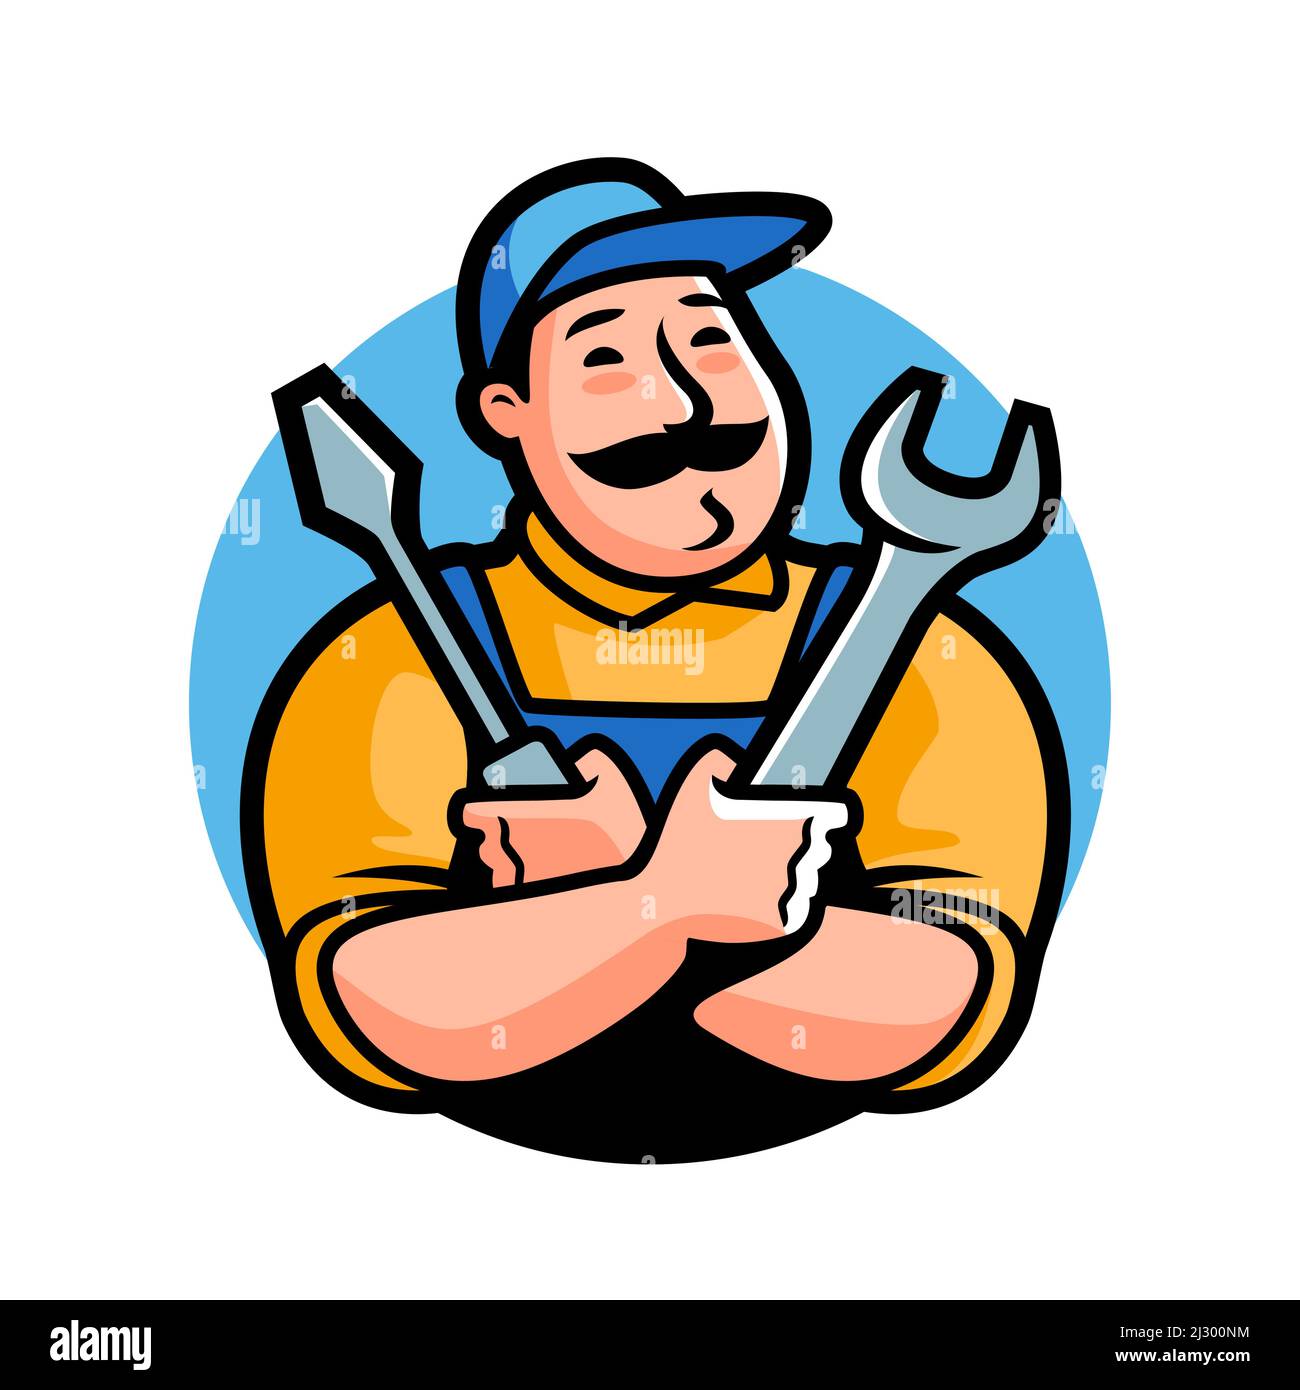 Logo dell'officina. Fregio meccanico con utensili da costruzione per autoriparazione. Illustrazione vettoriale dei caratteri cartoni animati Illustrazione Vettoriale